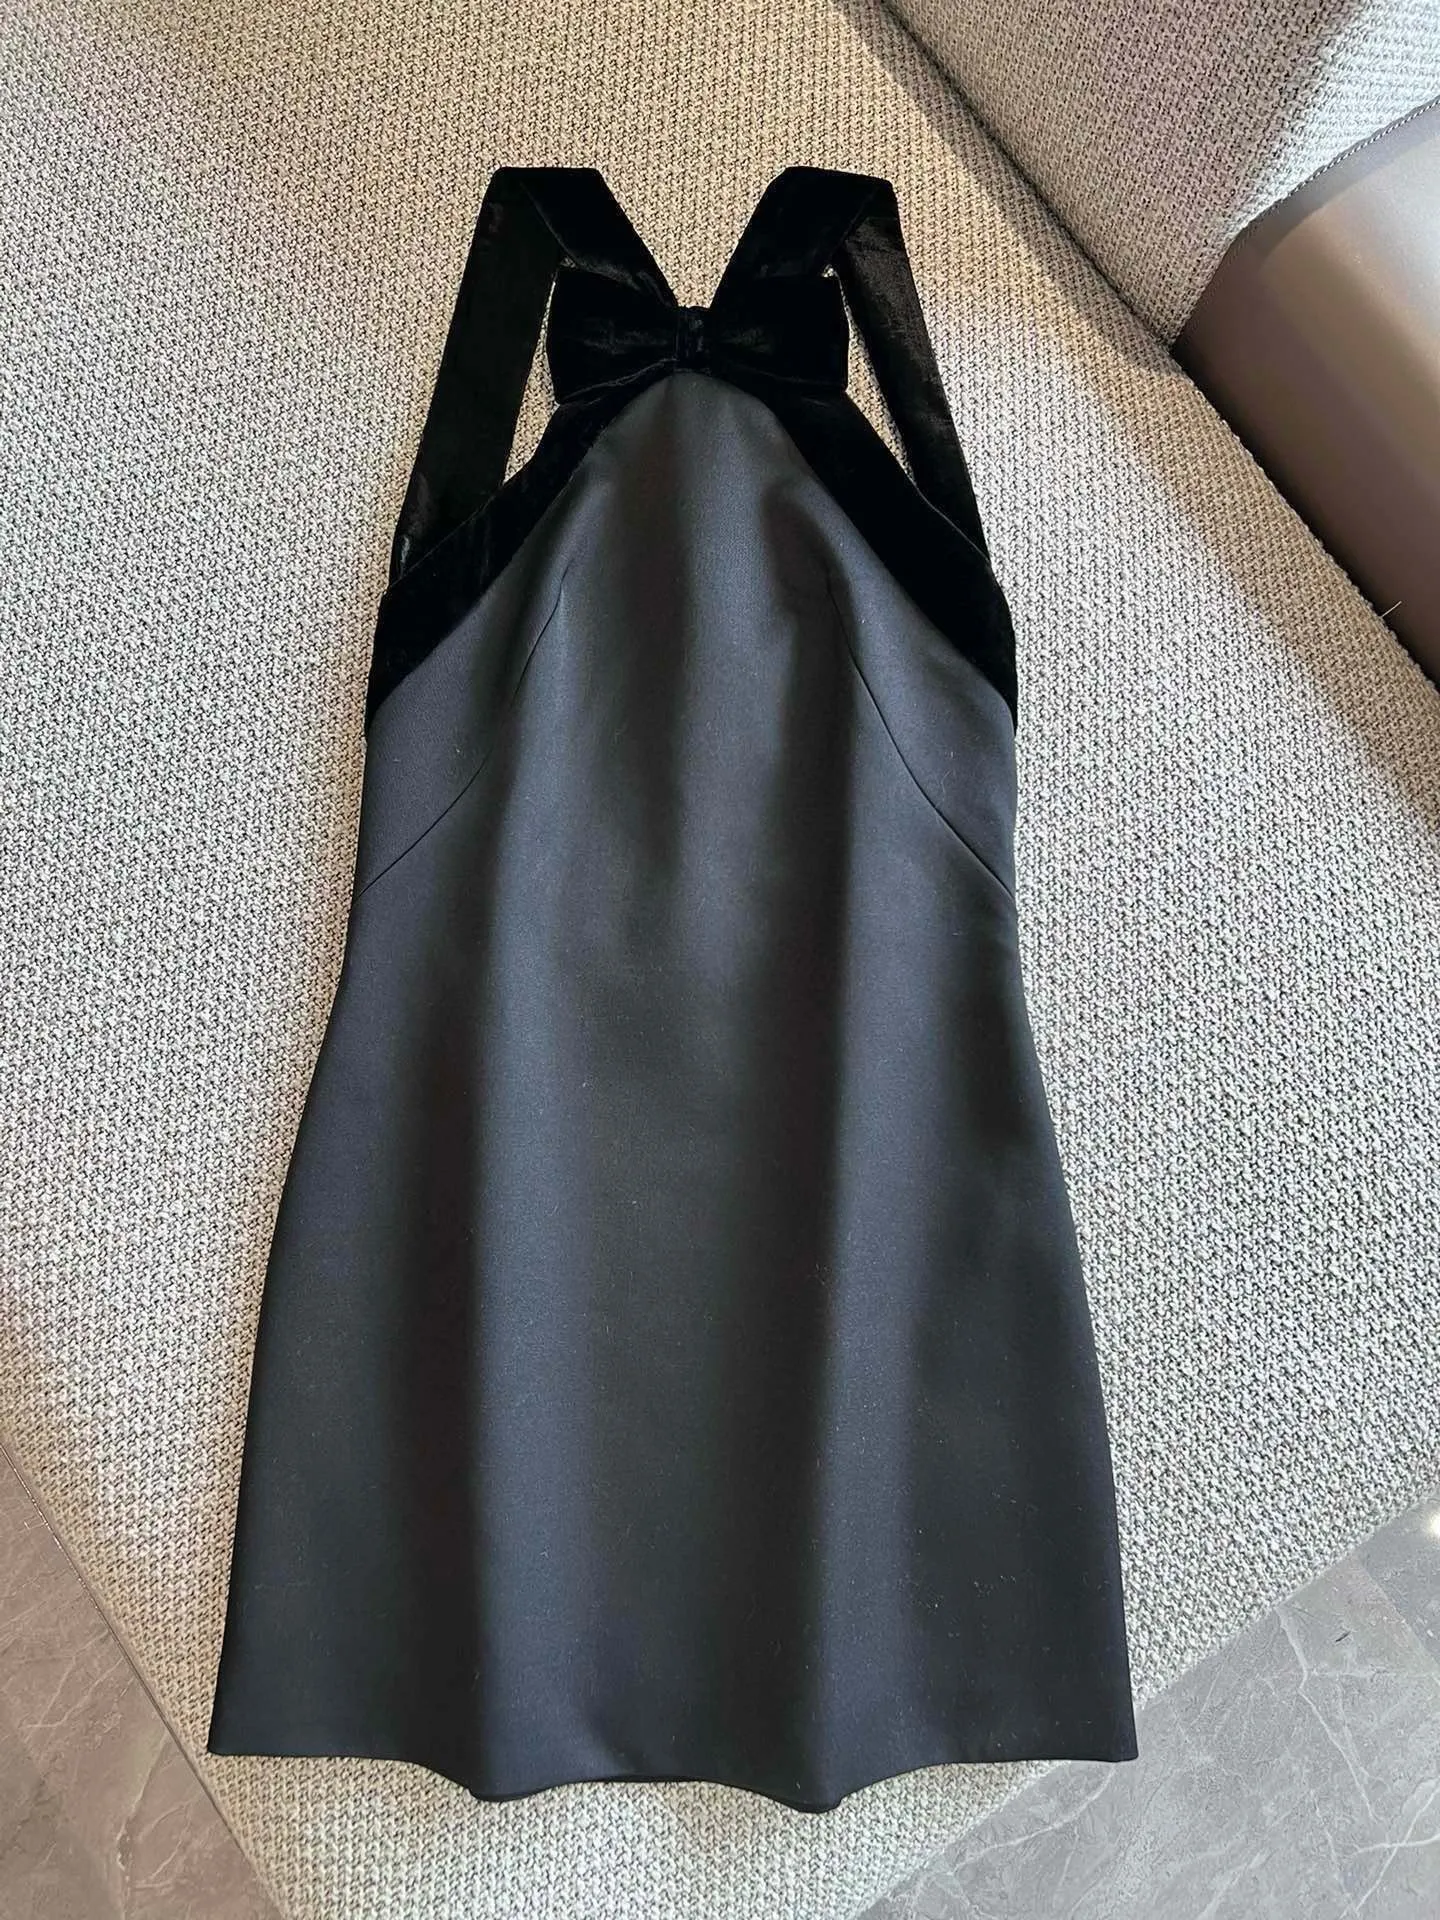 ブラックネックレディエレガントなベルベットパッチワークドレス女性のノースリーブヴィンテージハイ